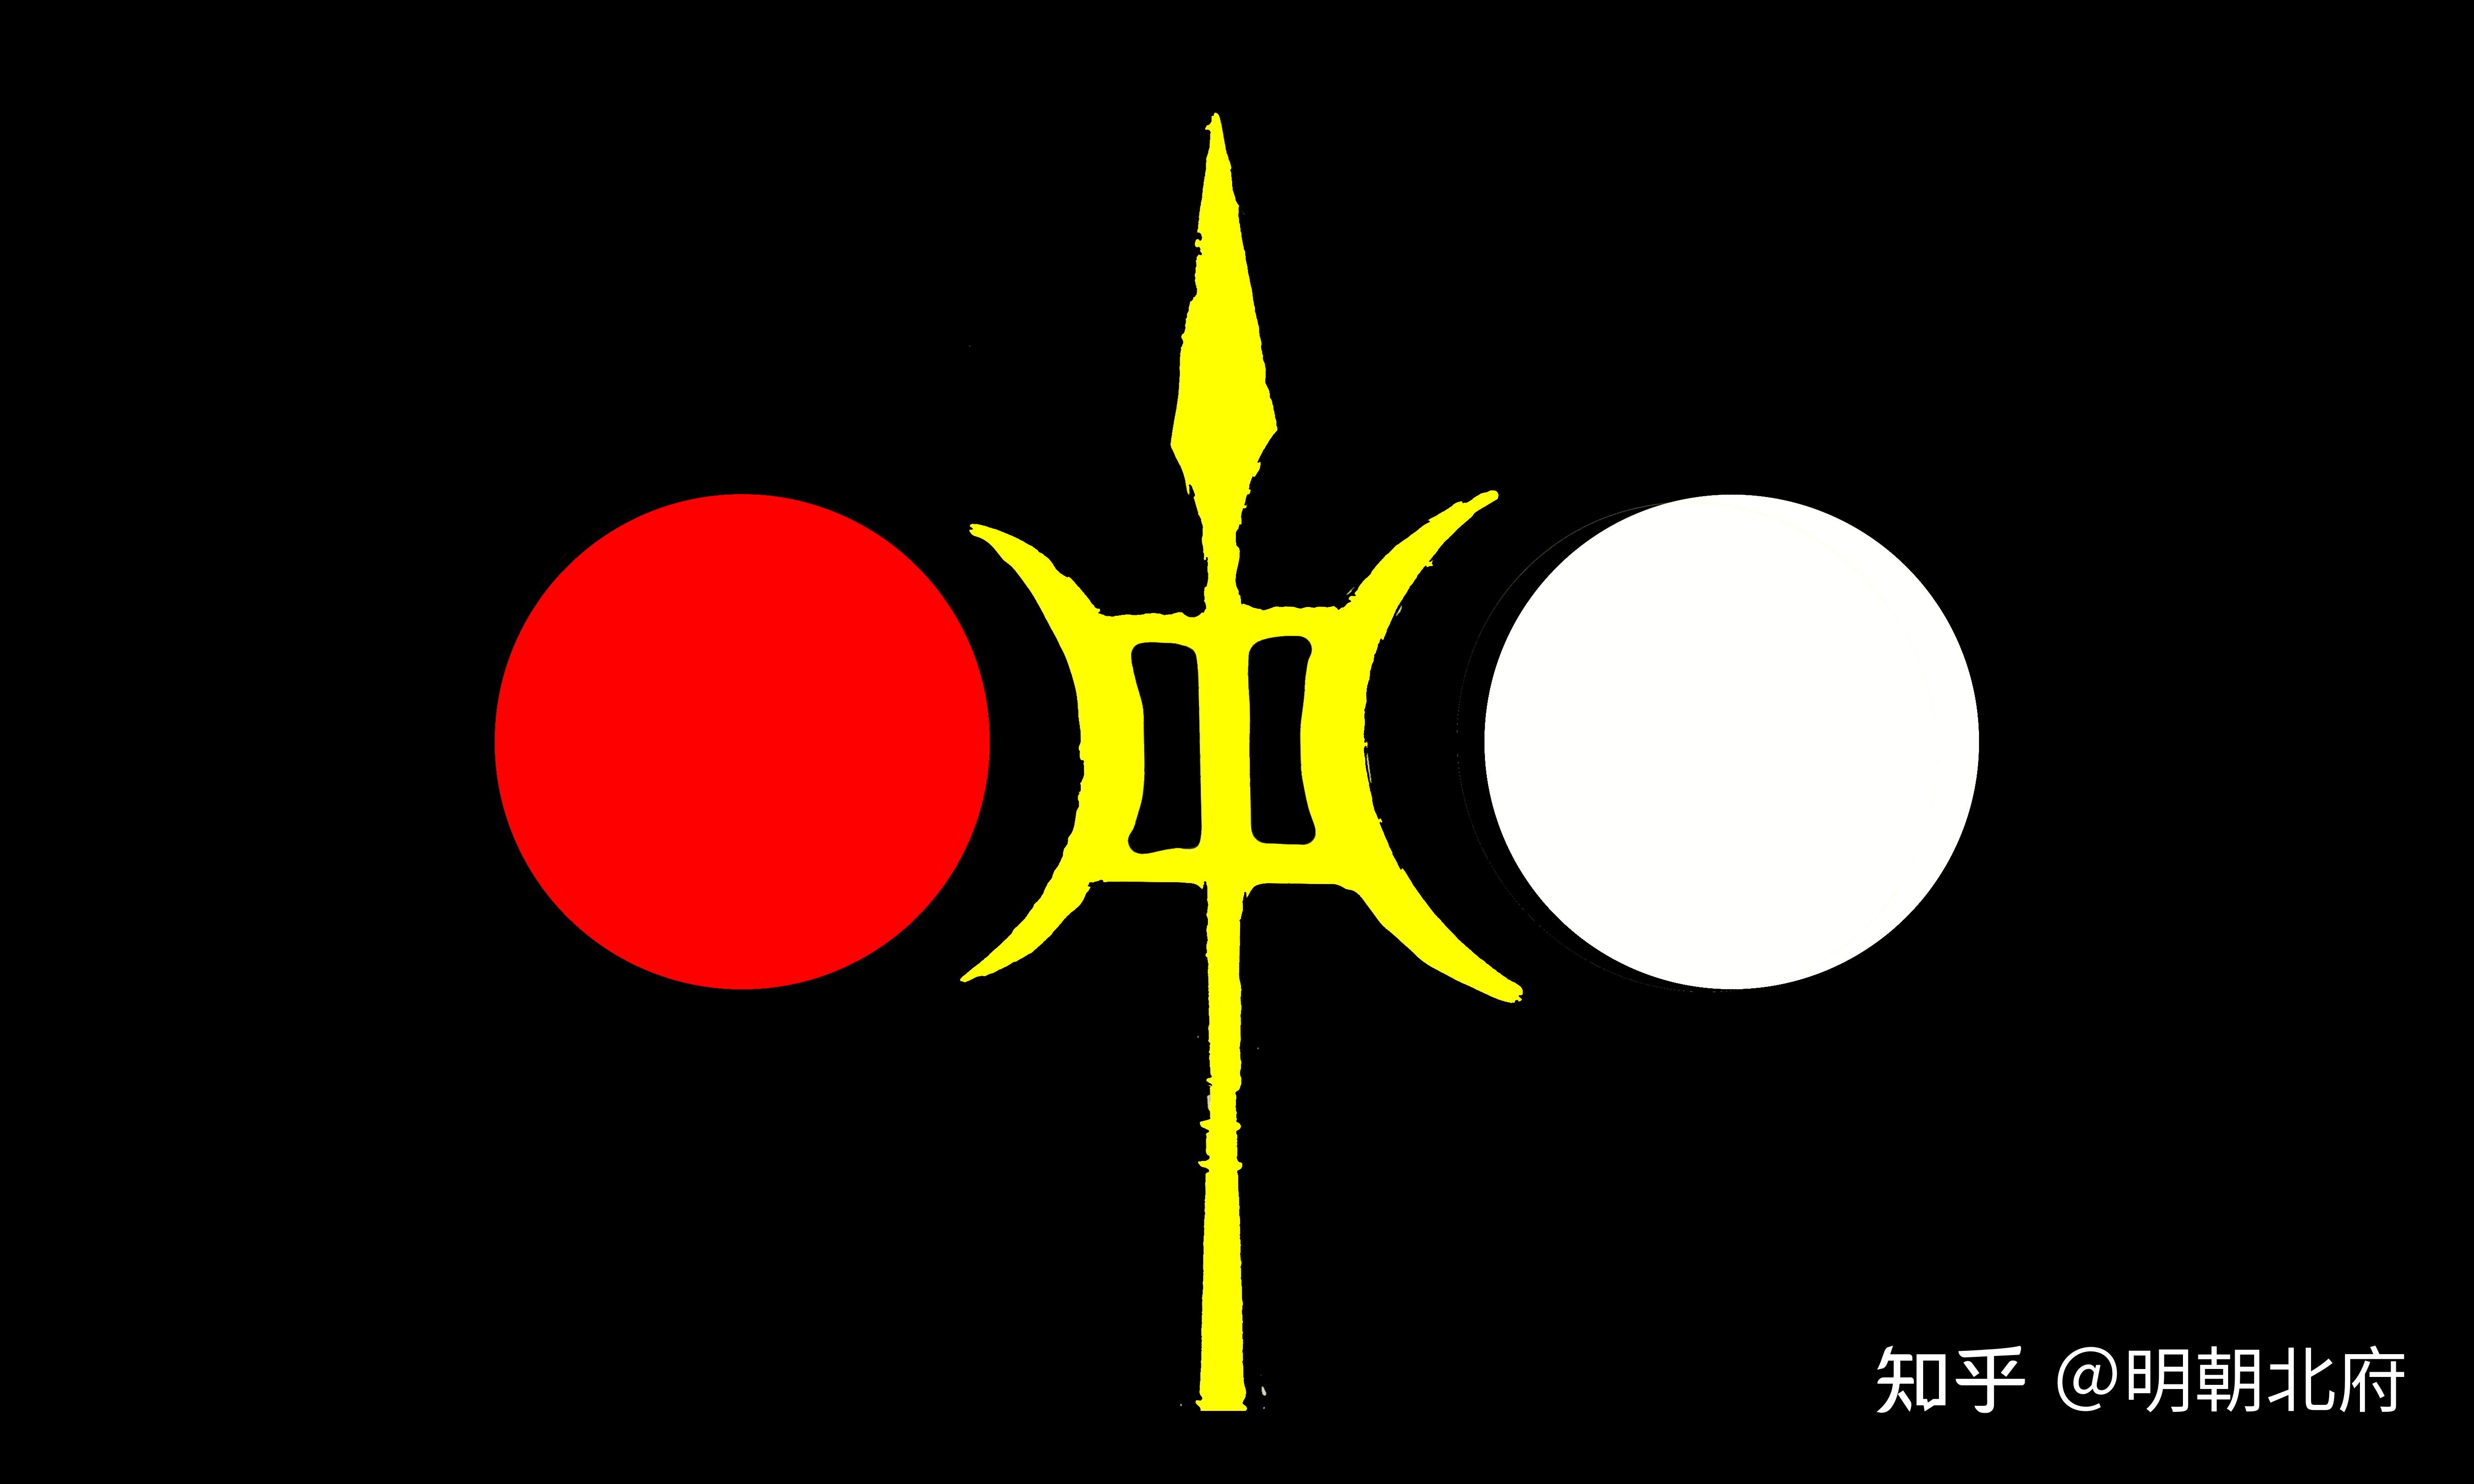 党党旗:日月旗(原型王旗太常旗)《明大宪·春礼·车旗》18世纪末期